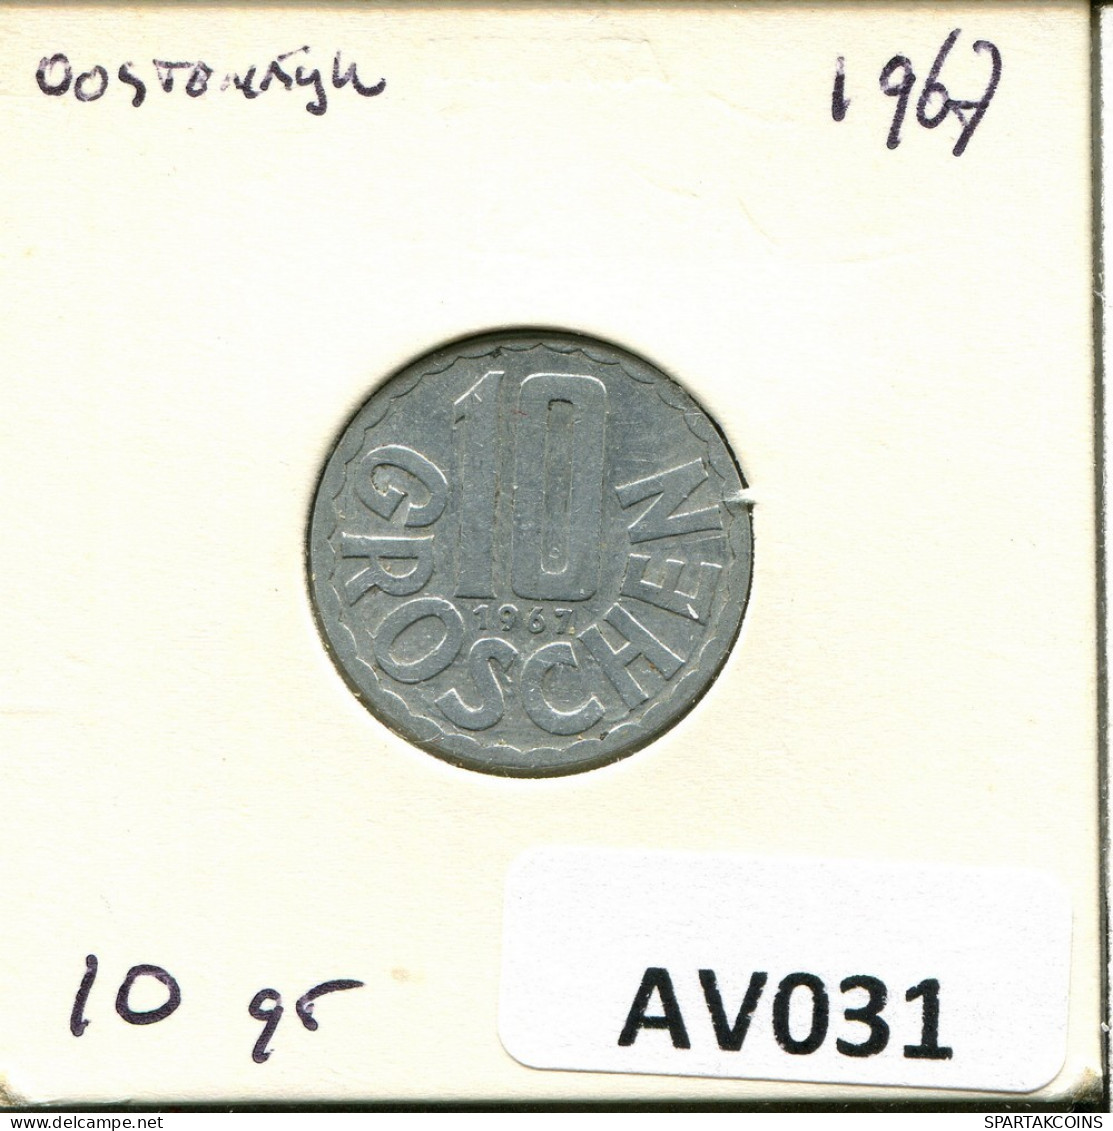 10 GROSCHEN 1967 ÖSTERREICH AUSTRIA Münze #AV031.D.A - Autriche